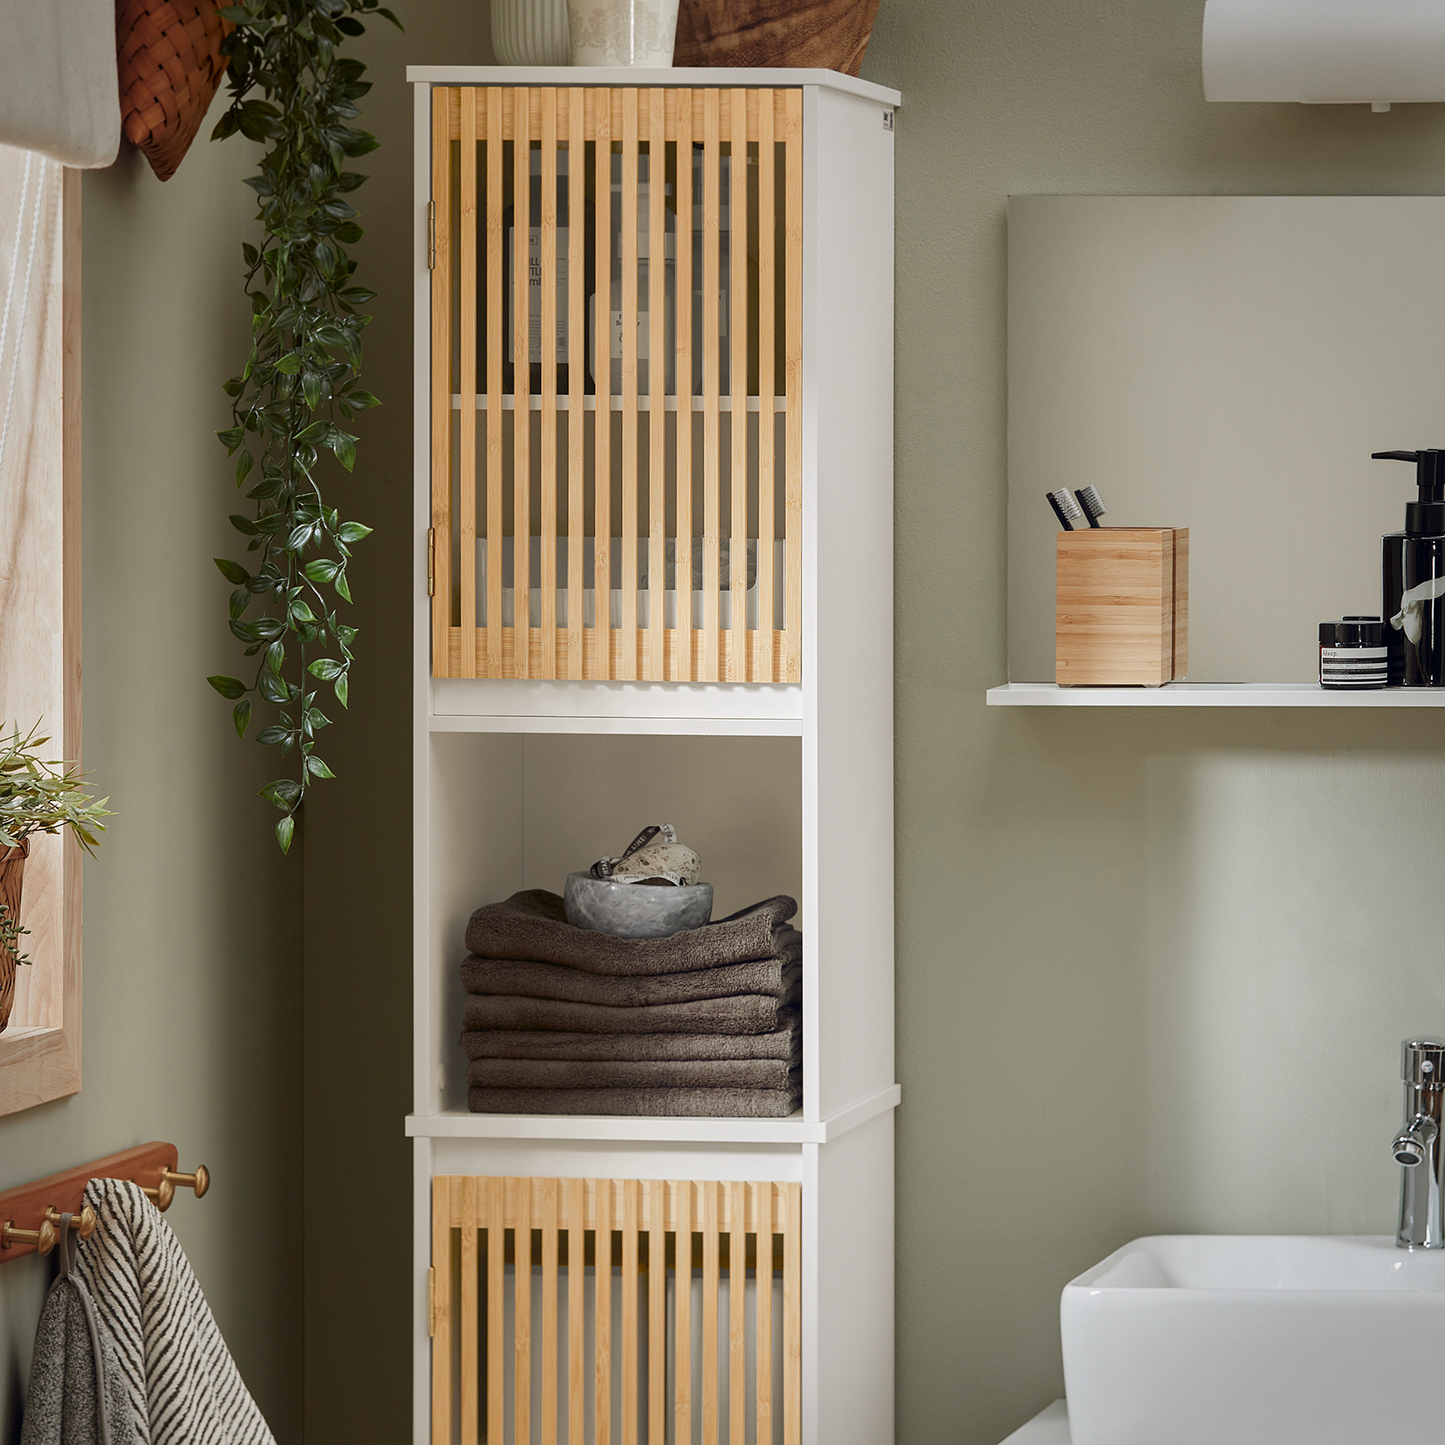 SoBuy Bamboo Bathroom Tall Cabinet Tall Cupboard Bathroom Cabinet Storage Cabinet